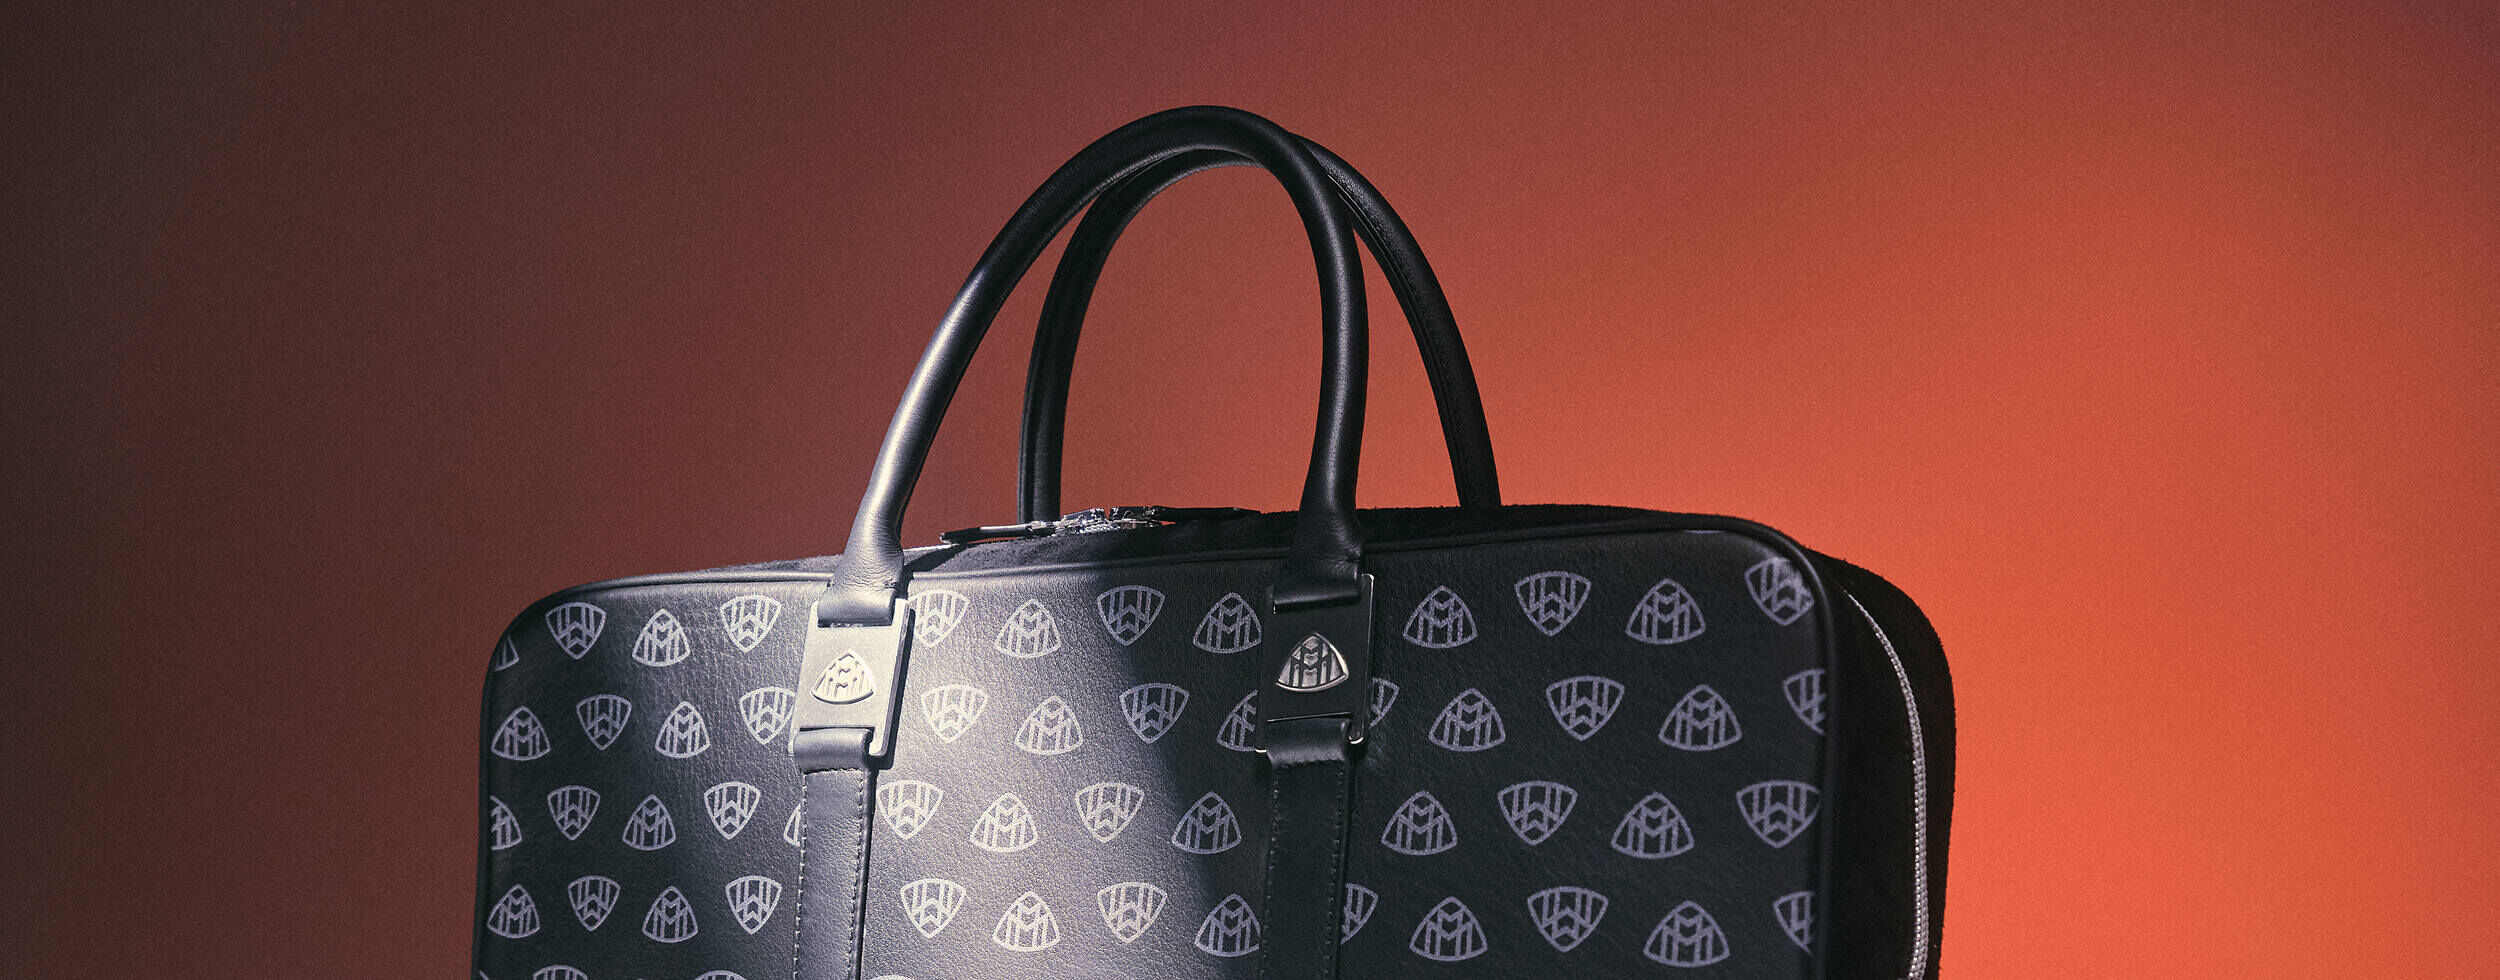 लेडीज़ बैग का सबसे बड़ा मार्किट।fancy and cheap bags,slings,clutch,handbag,office  bag,ladies purse - YouTube